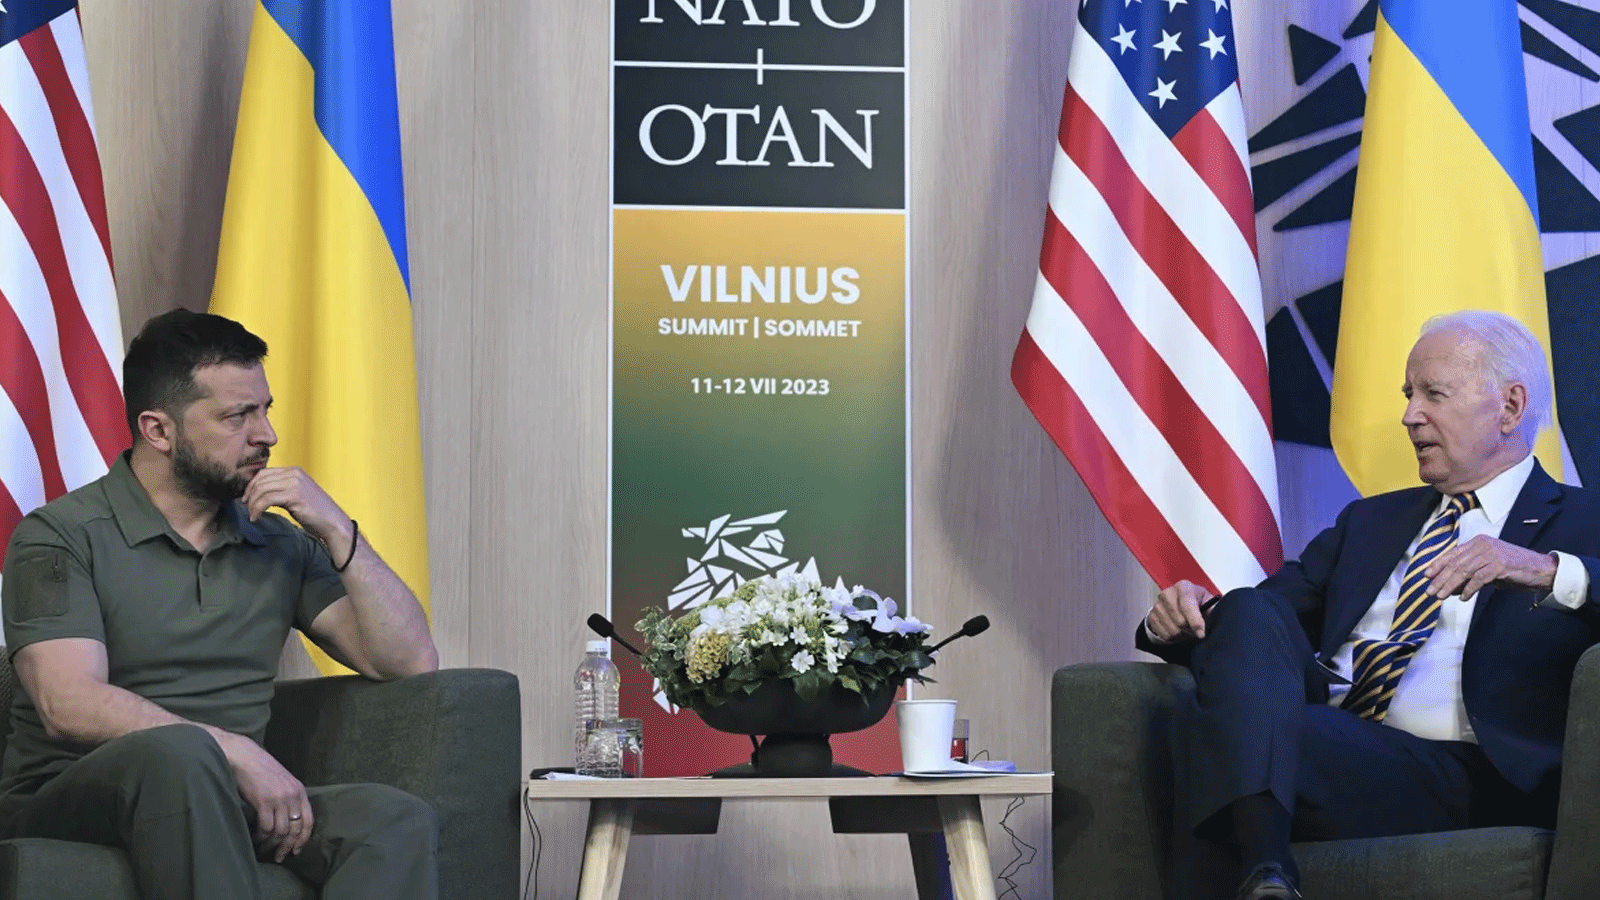 الرئيس الأمريكي جو بايدن (يمين) يحضر لقاء مع الرئيس الأوكراني فولوديمير زيلينسكي على هامش قمة الناتو في فيلنيوس في 12 تموز\يوليو 2023